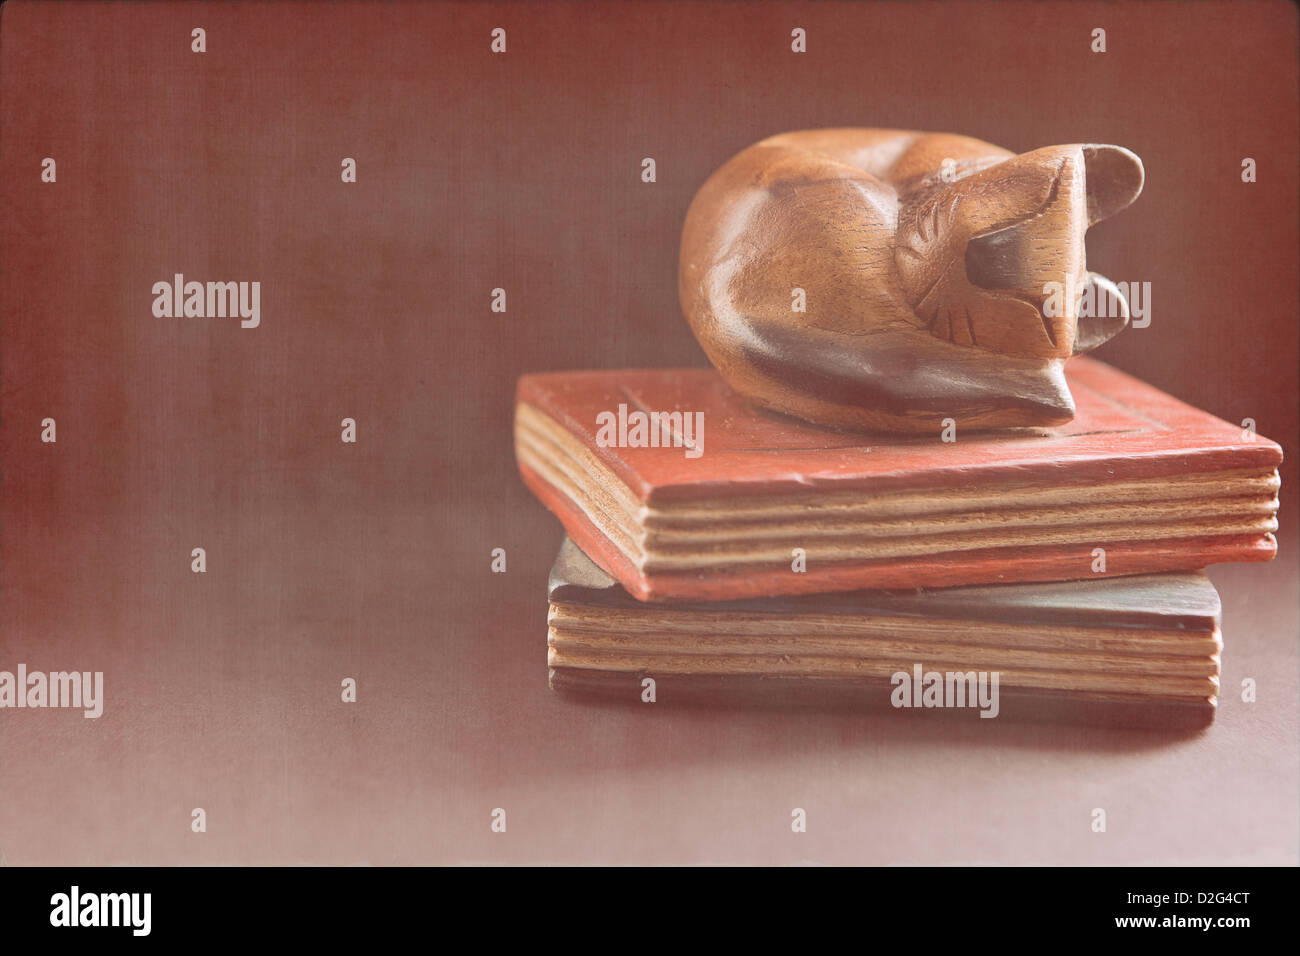 Stillleben-Bild einer Katze schlafen auf Bücher. Stockfoto